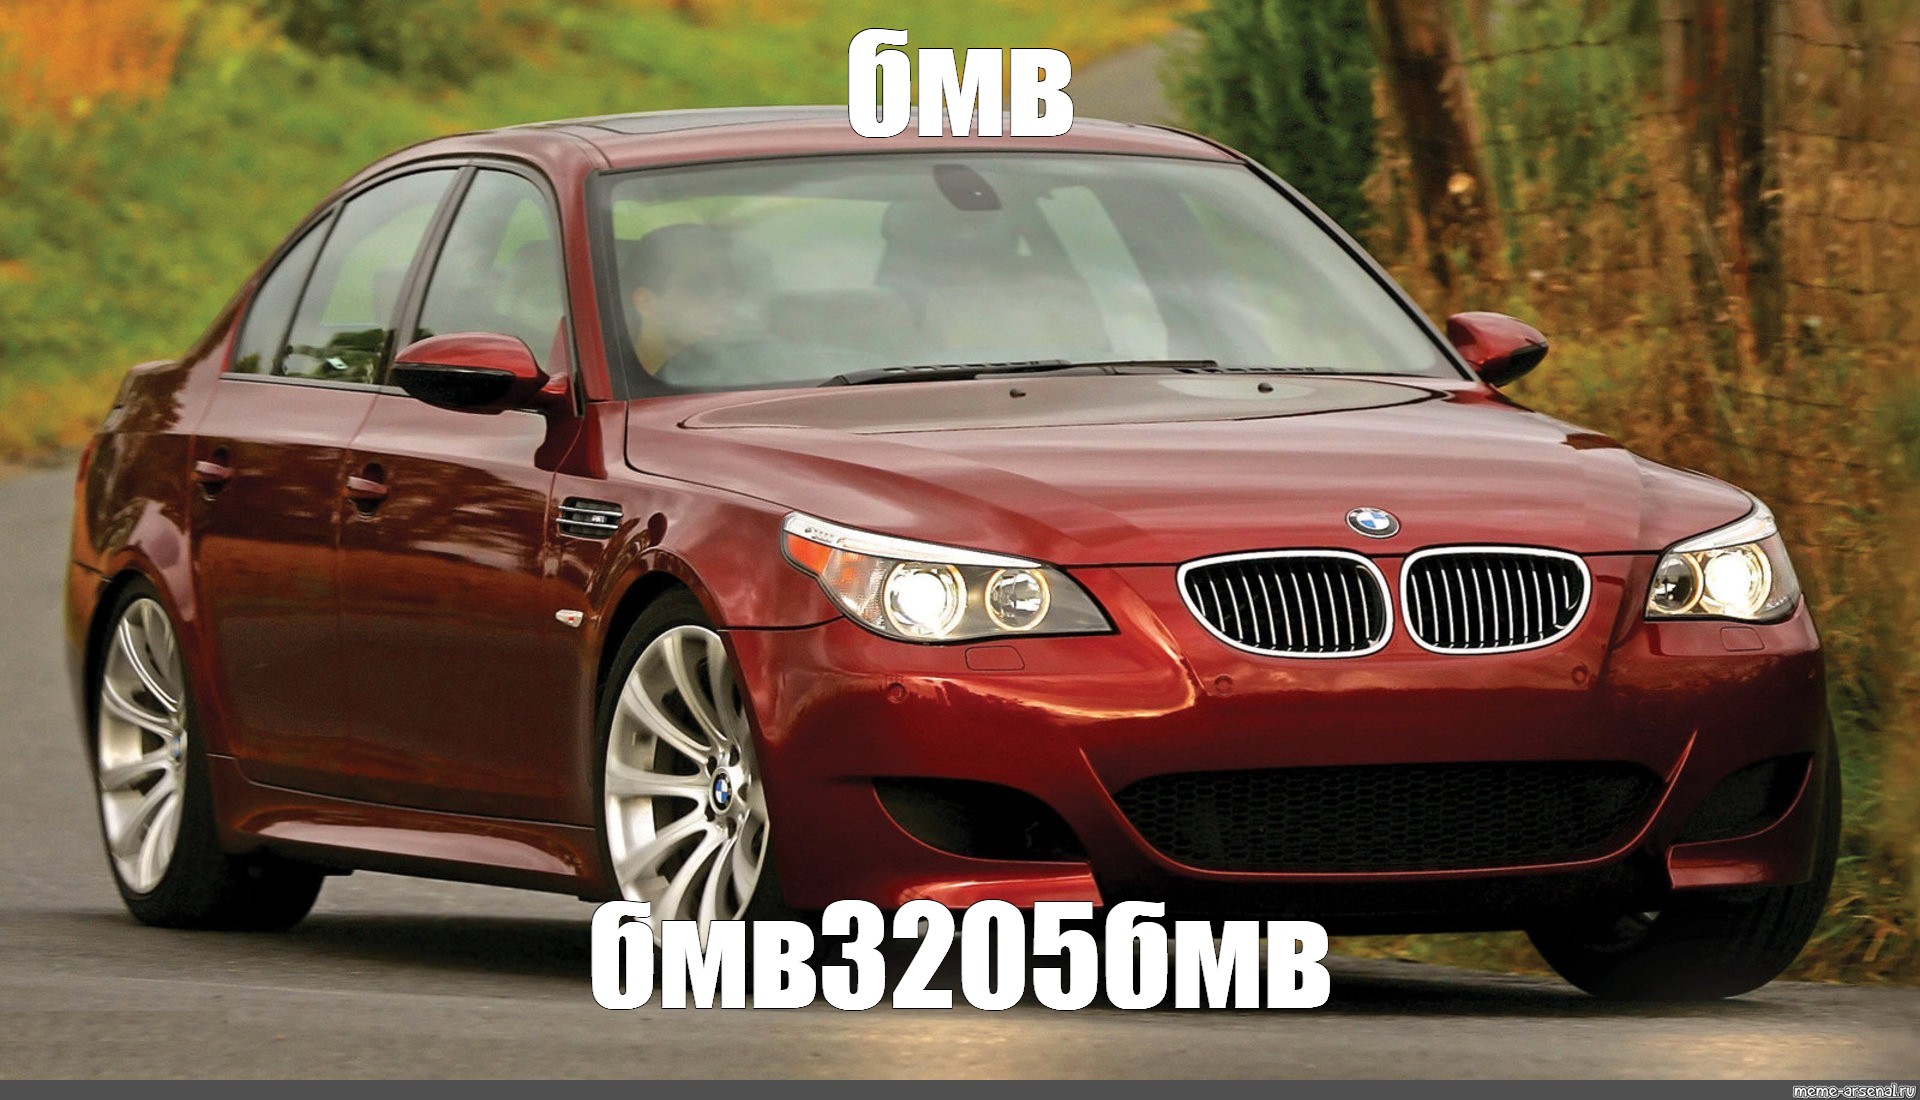 Купить м5 бу. БМВ м5 е60. BMW м5 e60. BMW 5 e60 m5. BMW 5 Series (e60).